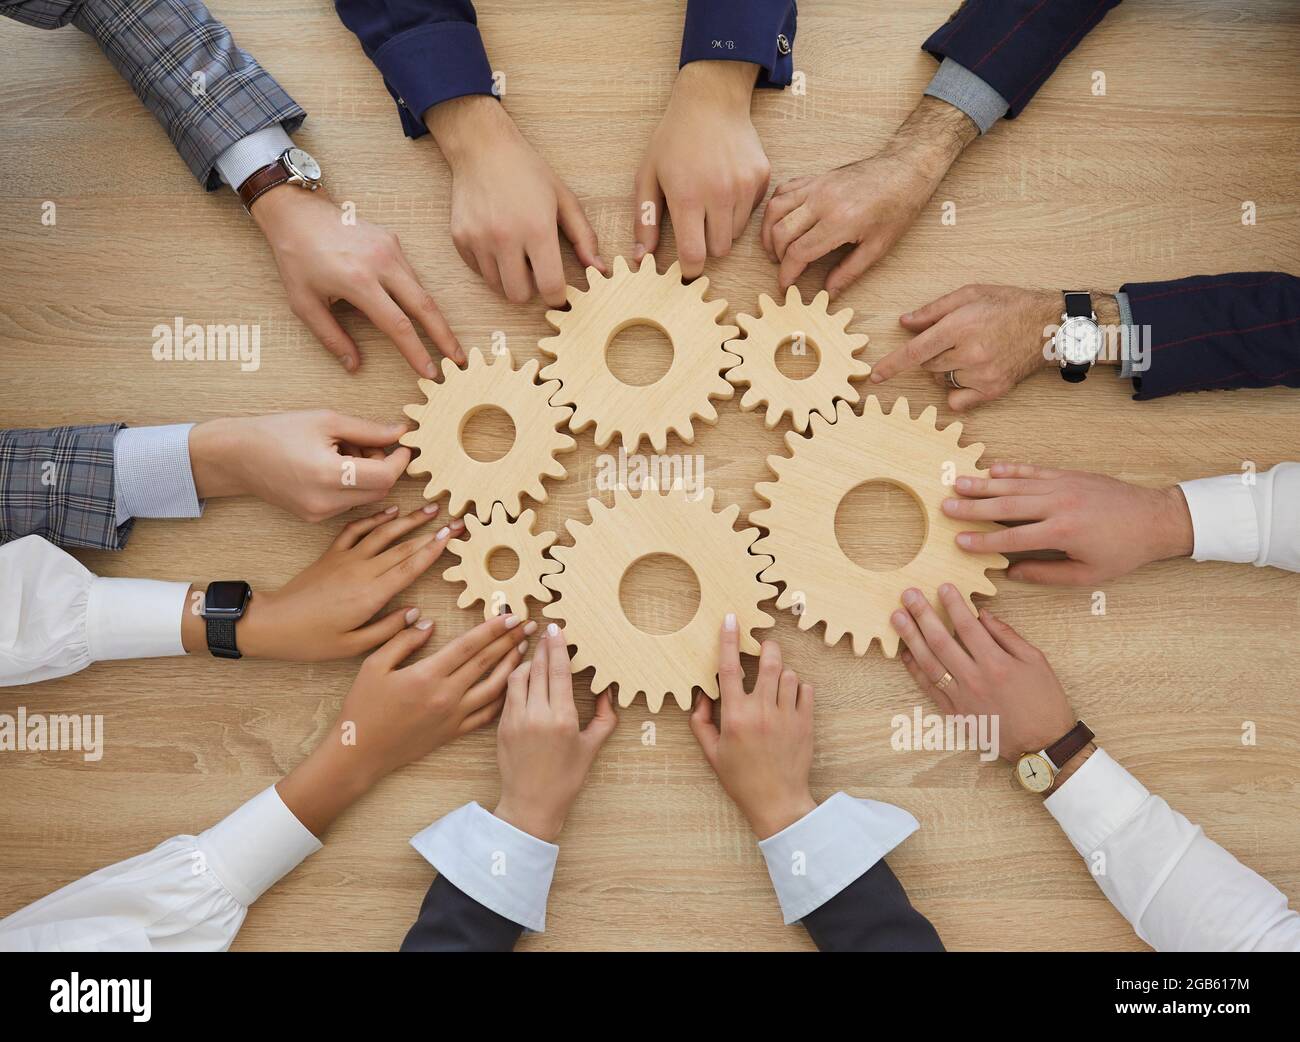 El equipo de personas se une a los engranajes como metáfora para el trabajo en equipo y un sistema empresarial eficaz Foto de stock